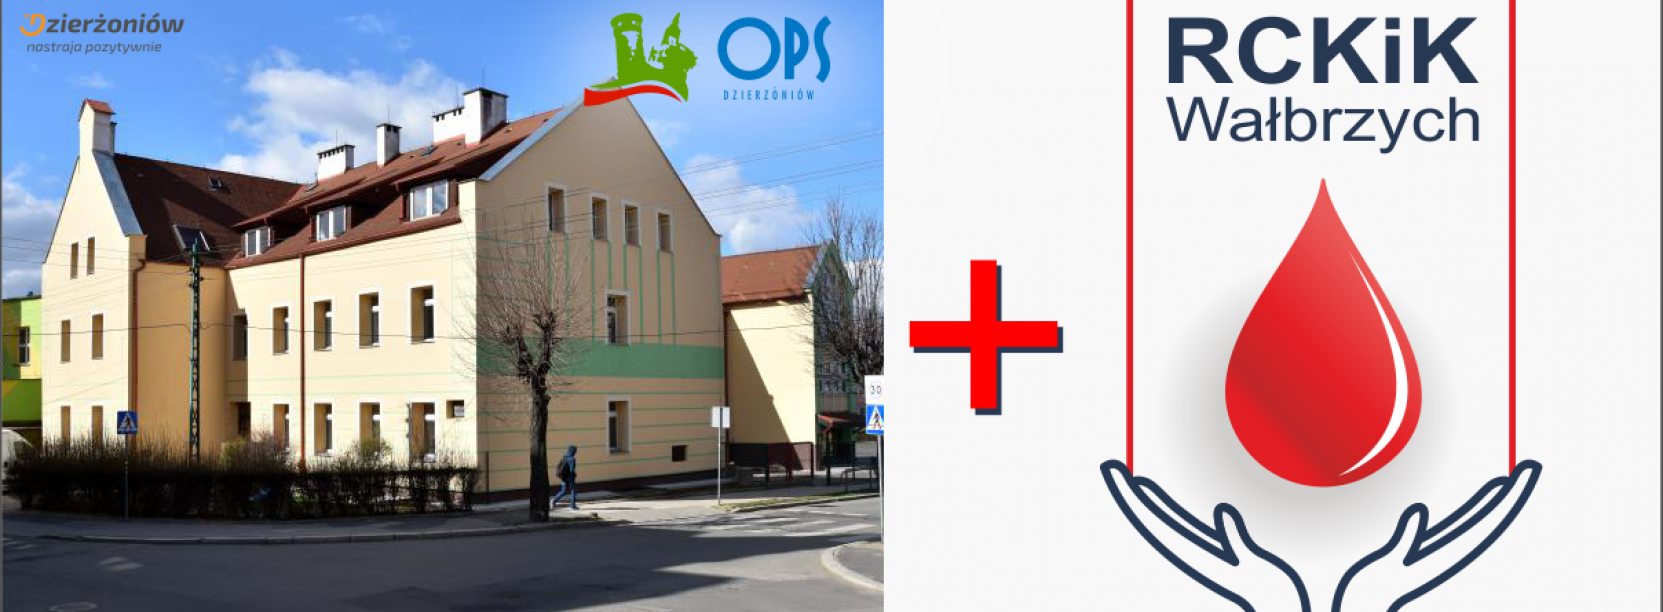 Budynek OPS-u w Dzierżoniowie i logo krwiodastwa